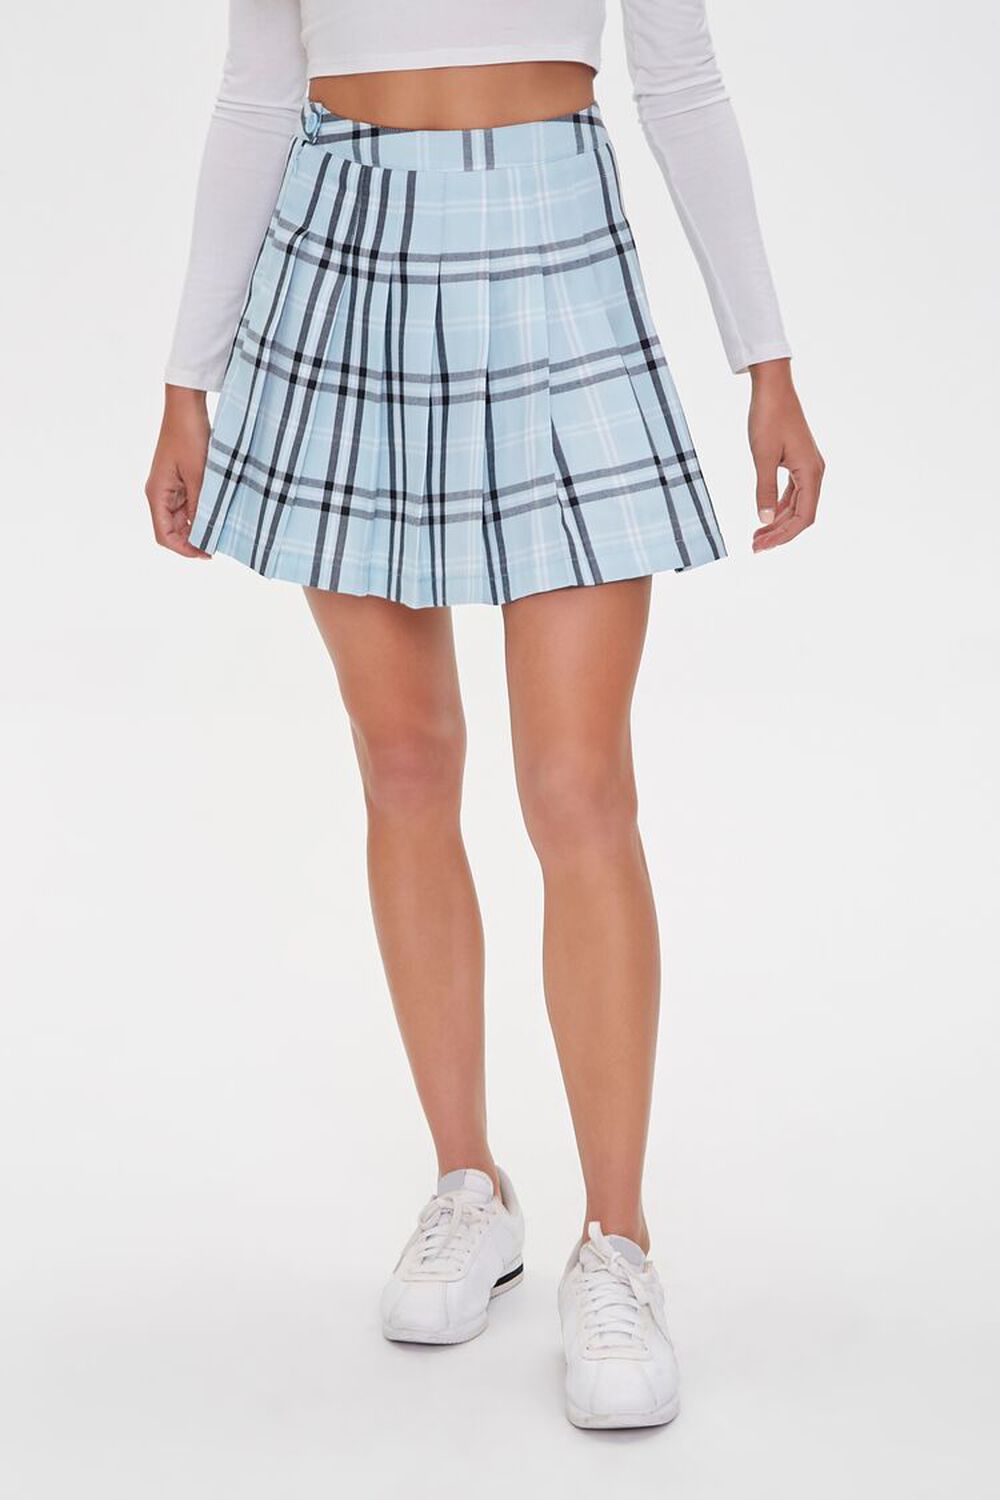 LIGHT BLUE/MULTI Pleated Plaid Mini Skirt, image 2